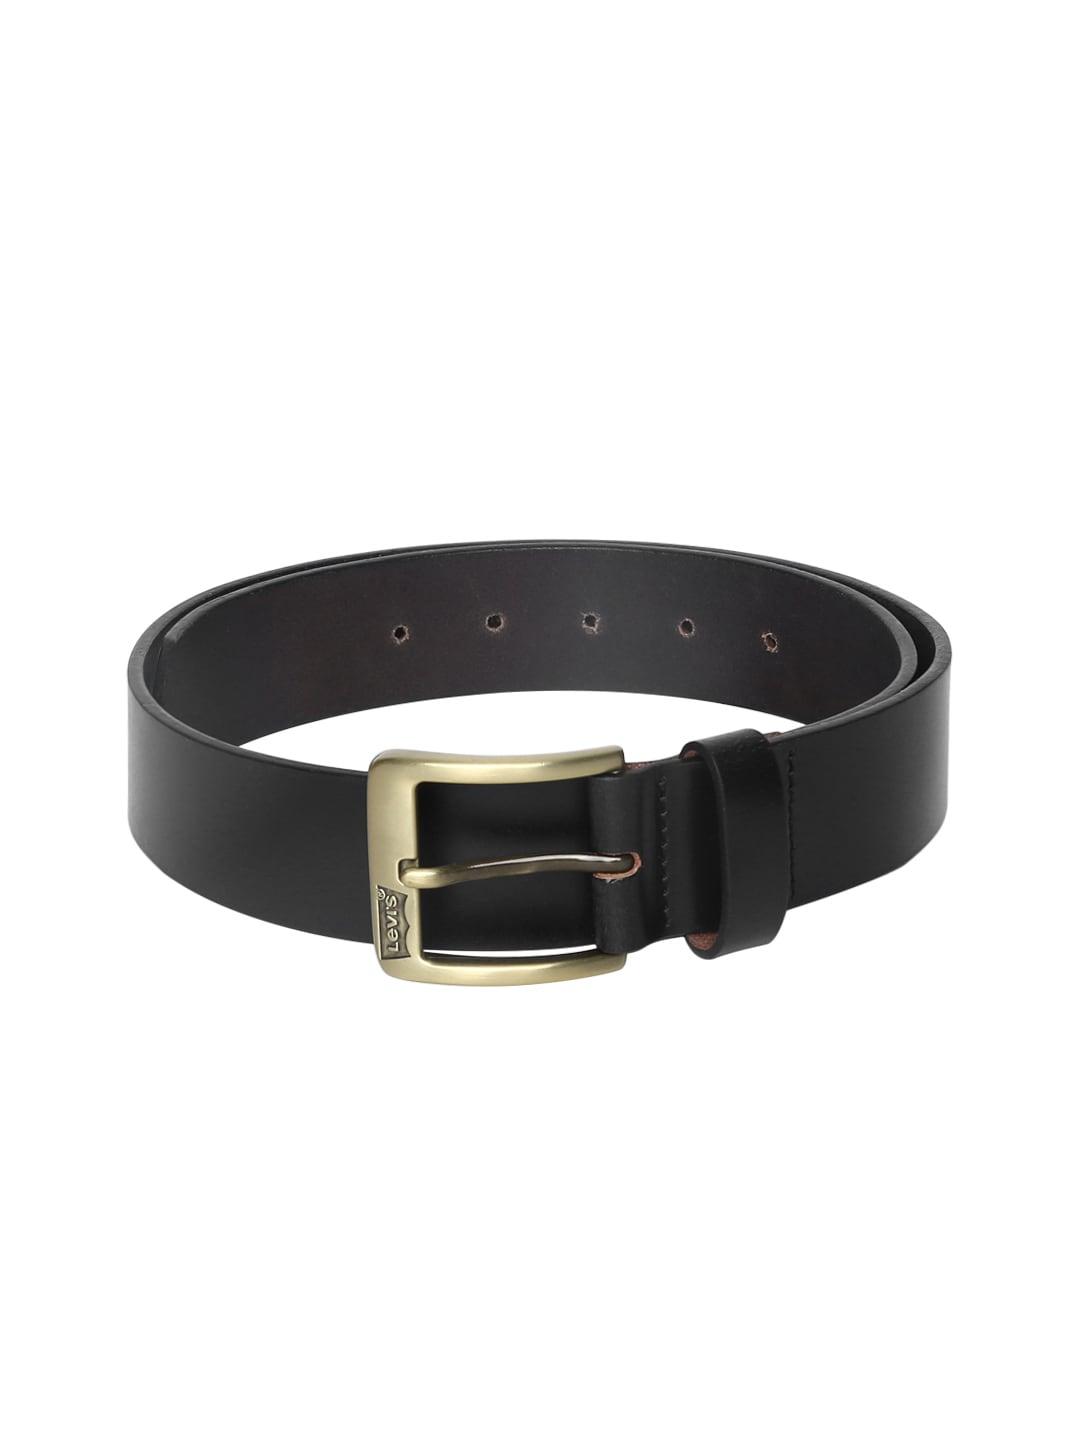 levis-men-black-solid-leather-belt